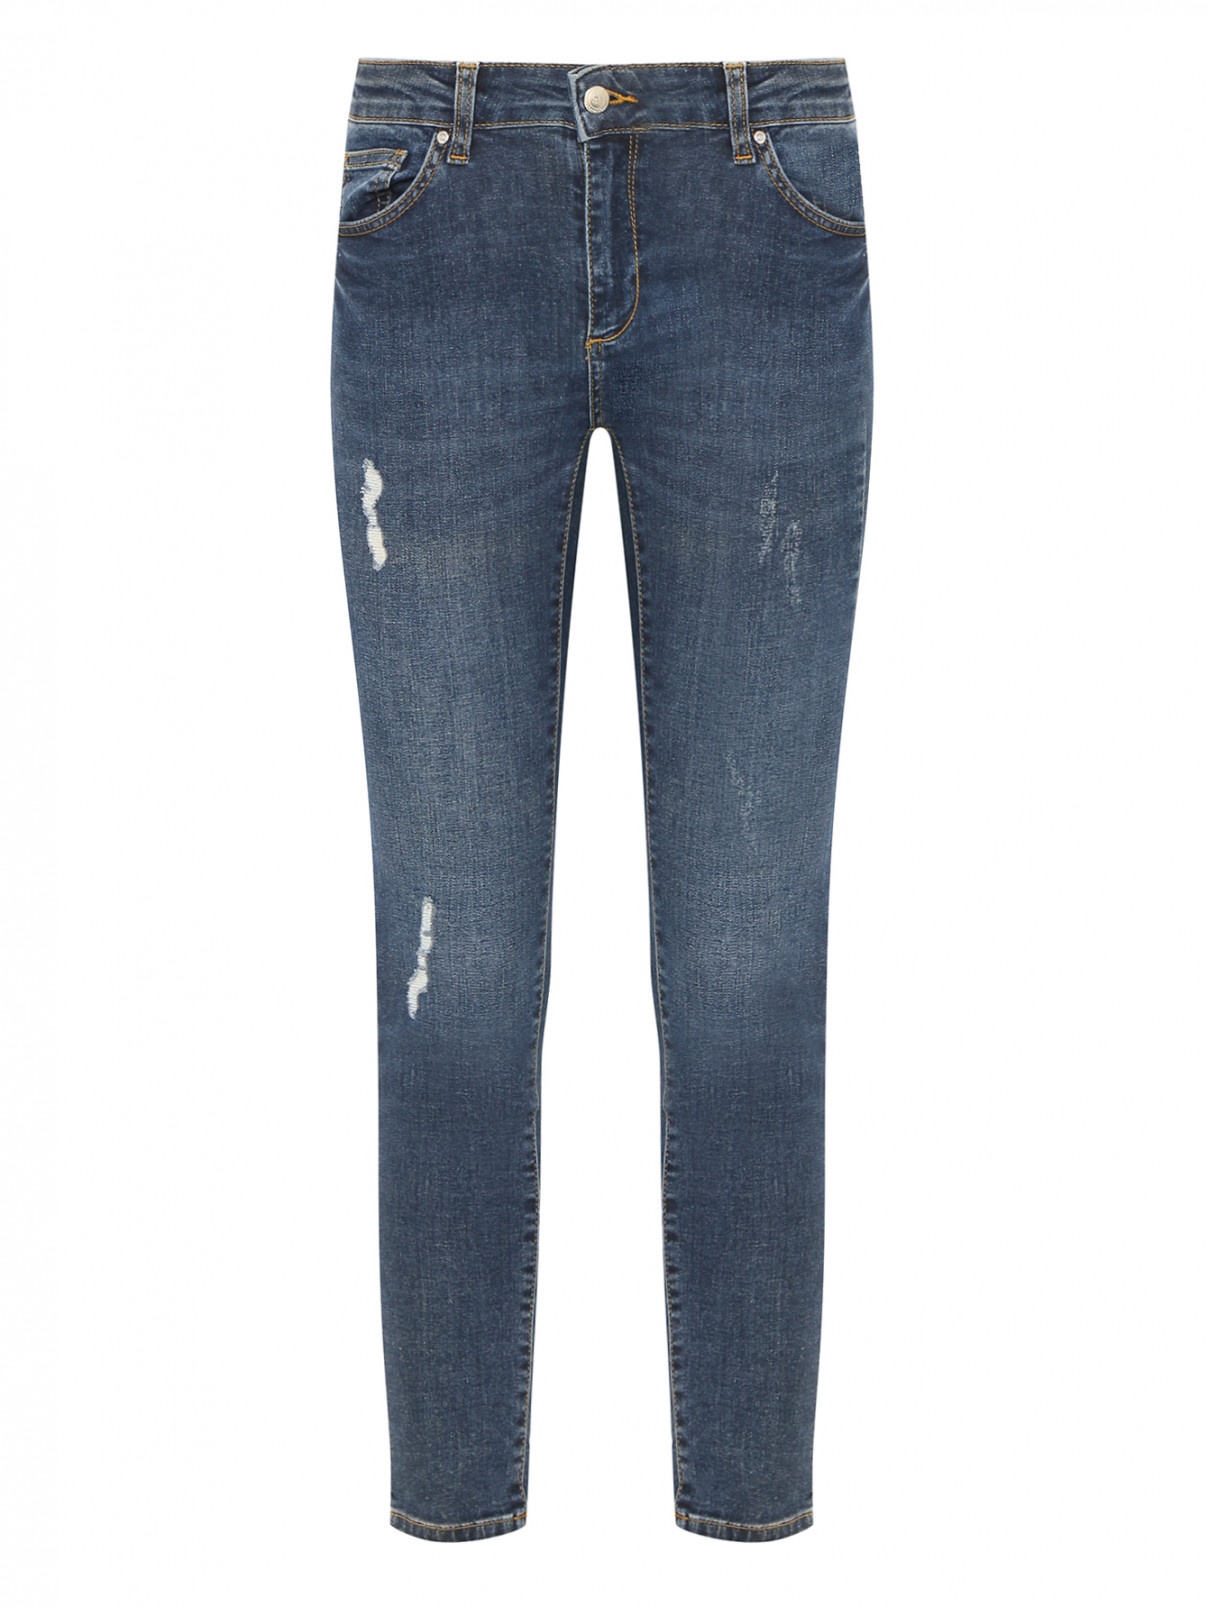 Зауженные джинсы с надрезами SILVIAN HEACH  –  Общий вид  – Цвет:  Синий